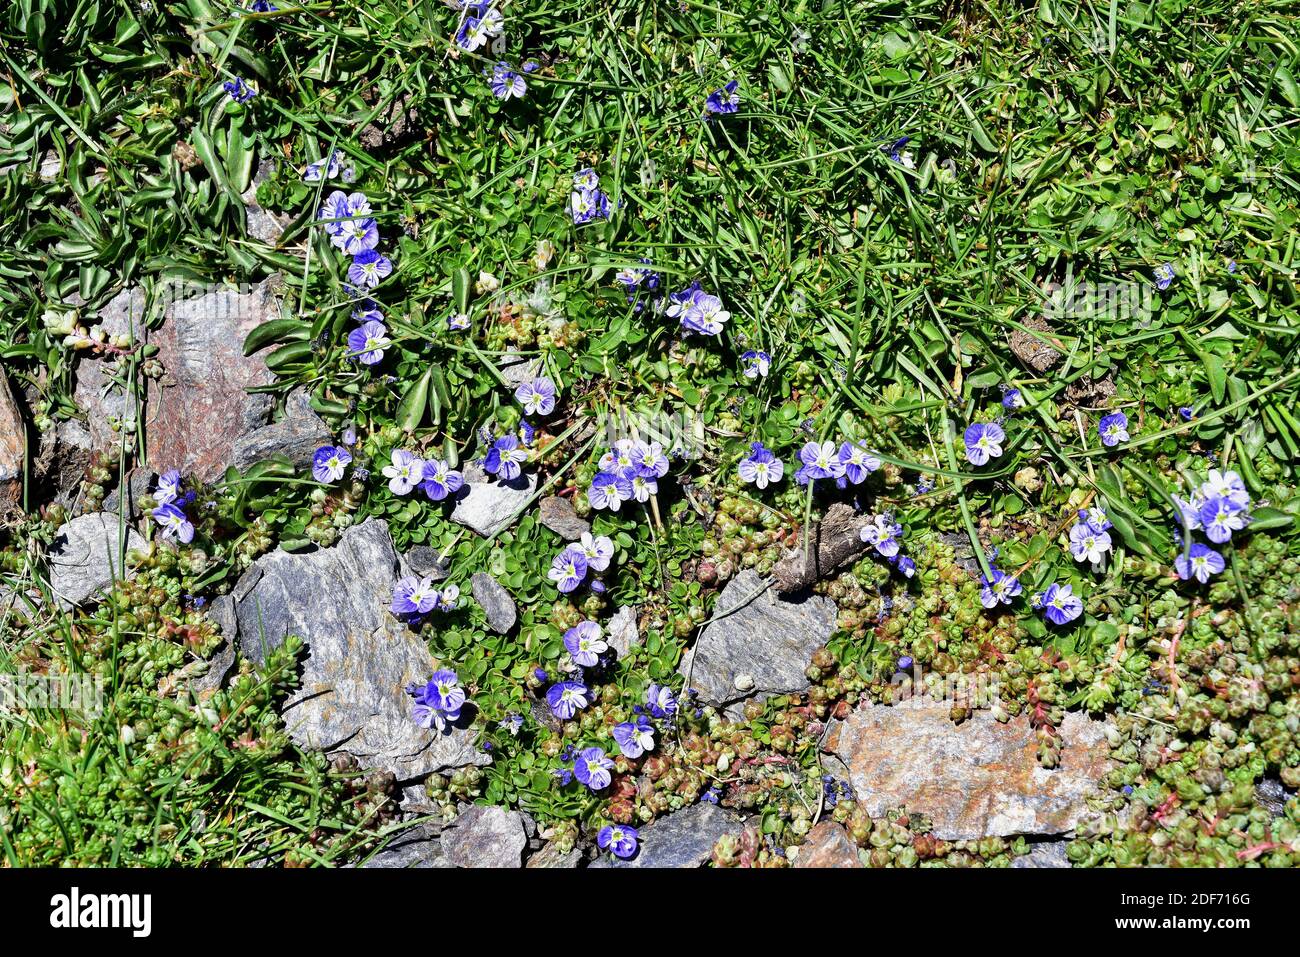 Veronica turbicola ou Veronica nevadensis est une plante vivace endémique à la Sierra Nevada et à la Sierra de Los Filabres. Pousse sur des prés humides (borreguiles) Banque D'Images